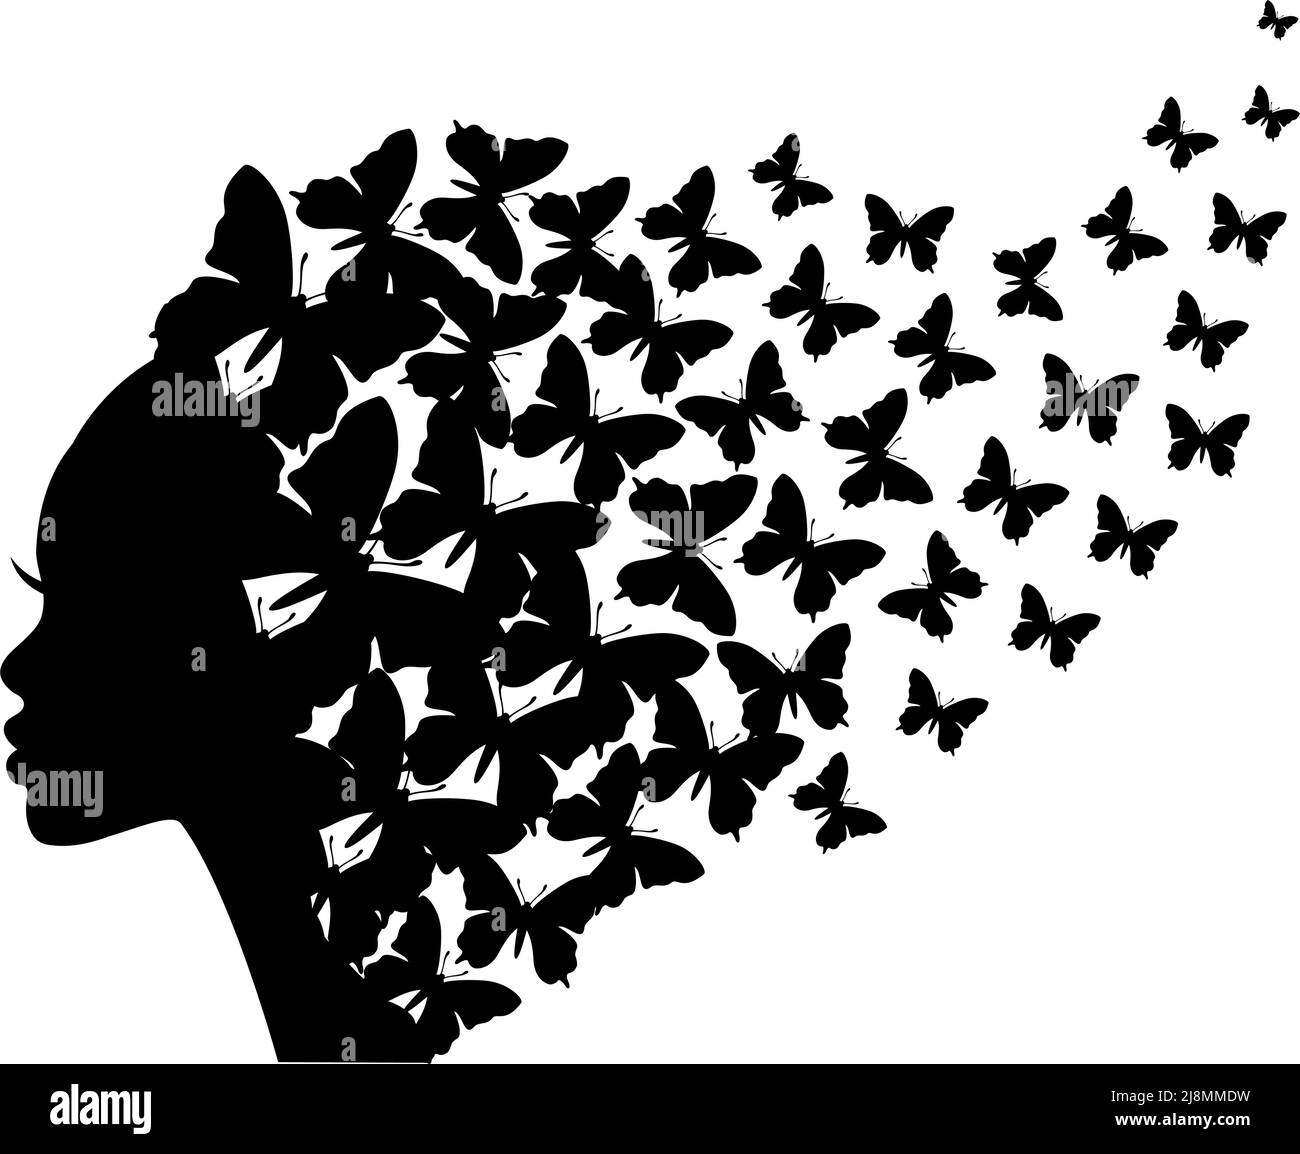 Magnifique silhouette de femme noire avec papillons volants, illustration vectorielle sur fond blanc Illustration de Vecteur